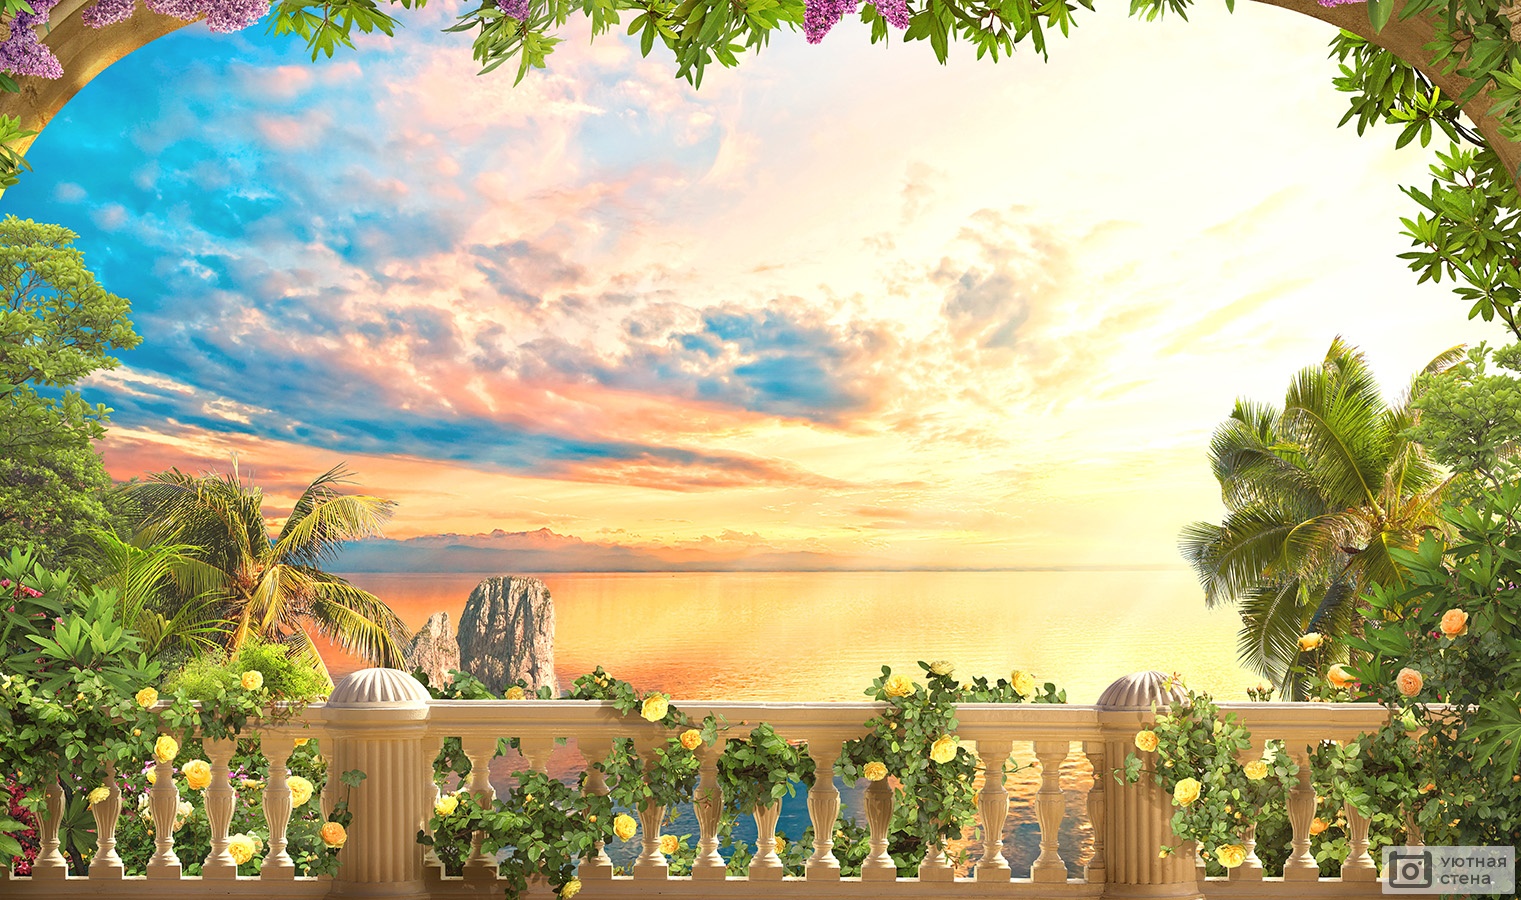 Украшенный цветами балкон с видом на закат на море